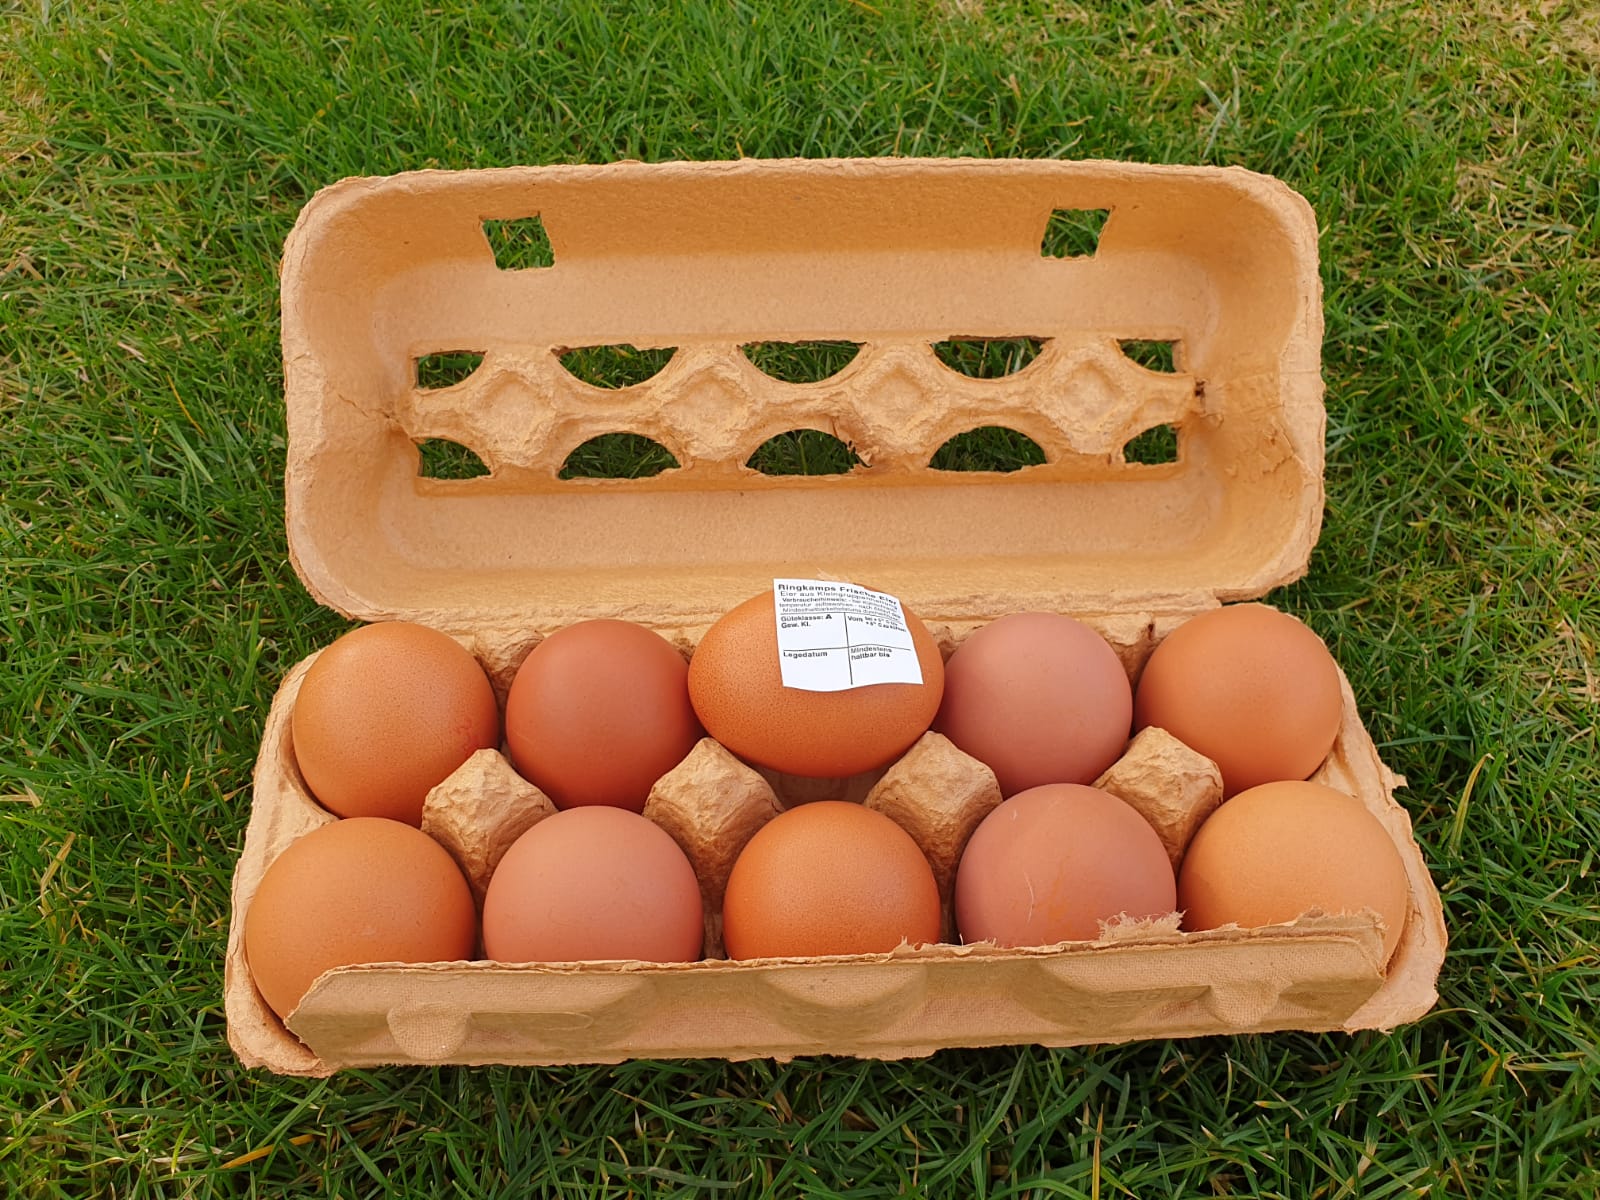 Eieretiketten für Eier und Eierverpackungen